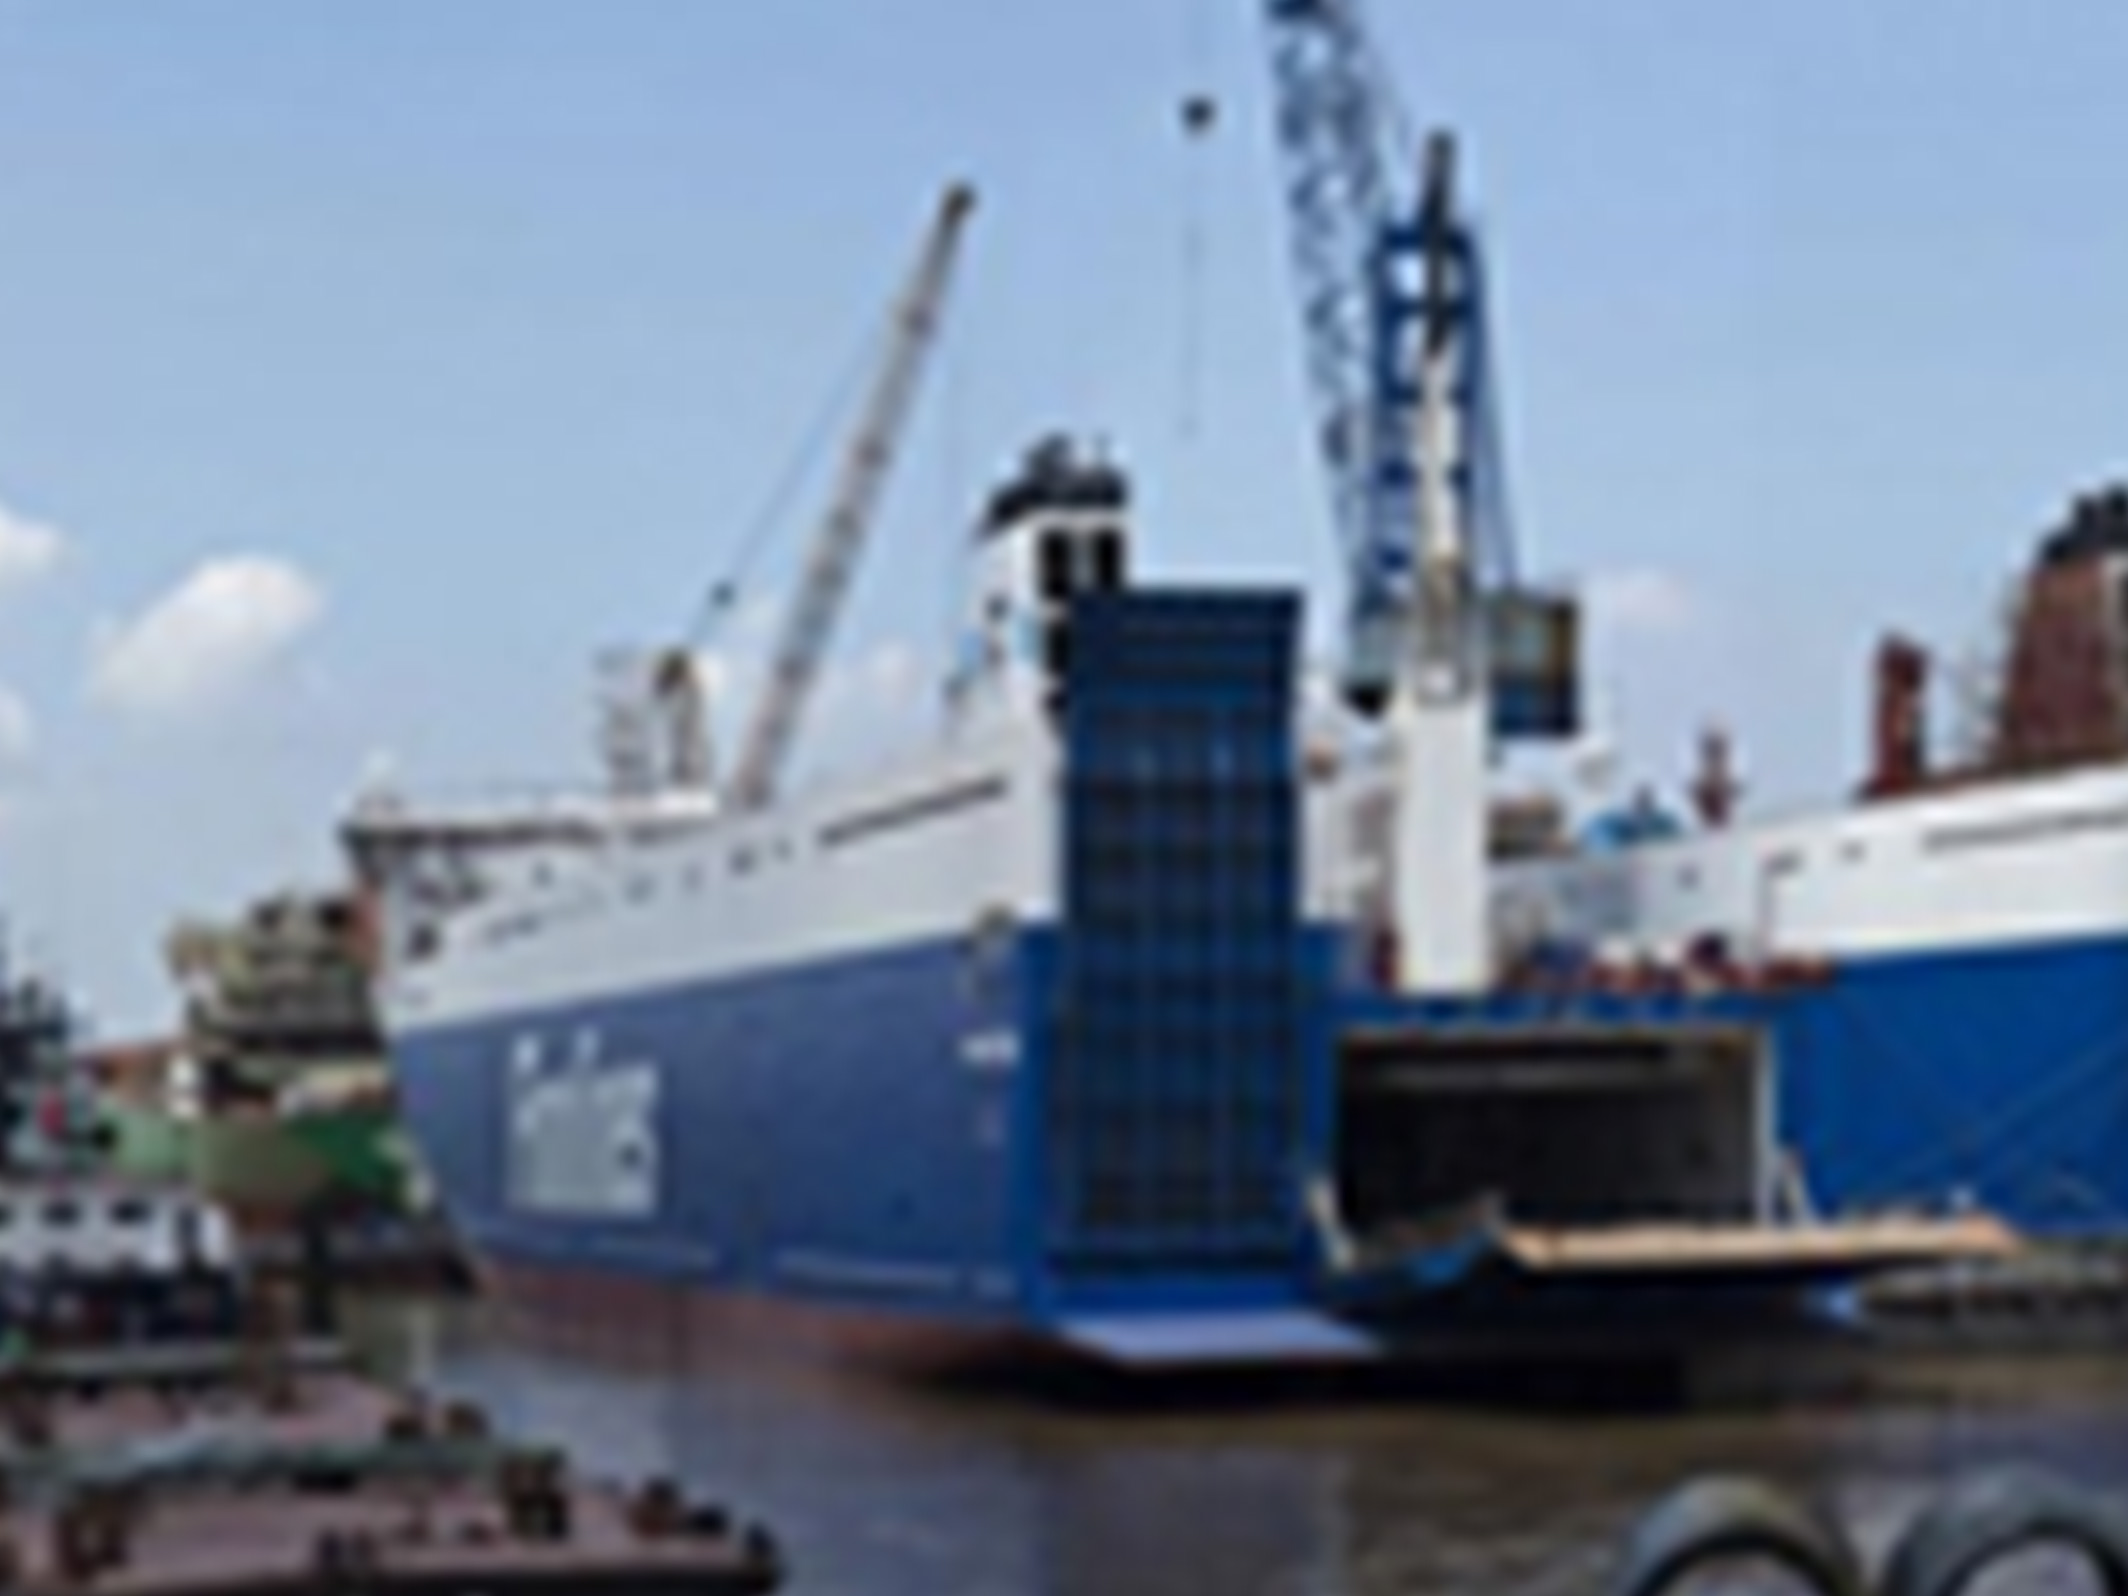 海南自贸港开通首条洲际集装箱航线